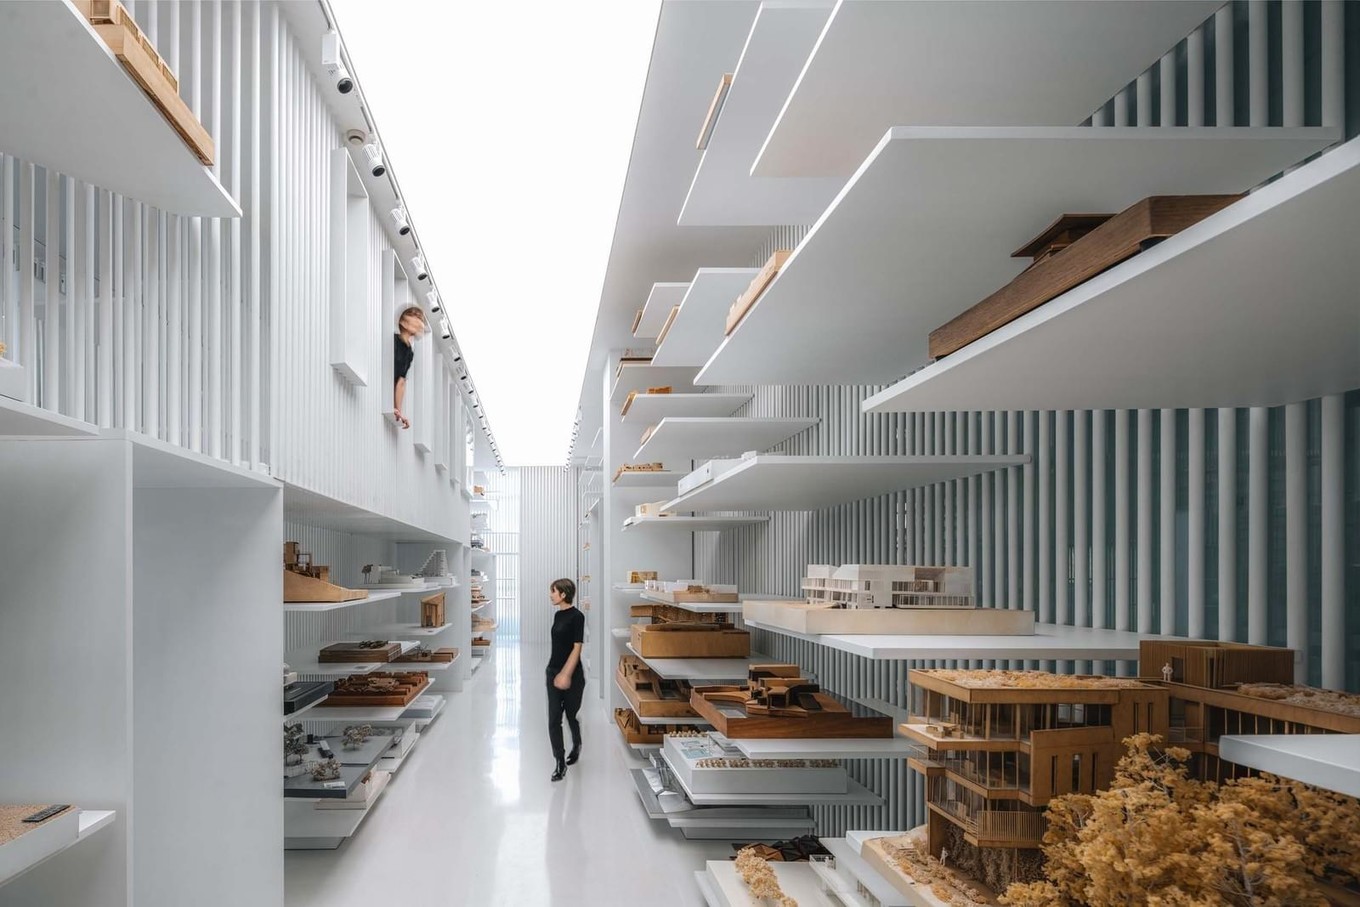 Музей архитектурных моделей в Китае дизайн,музеи